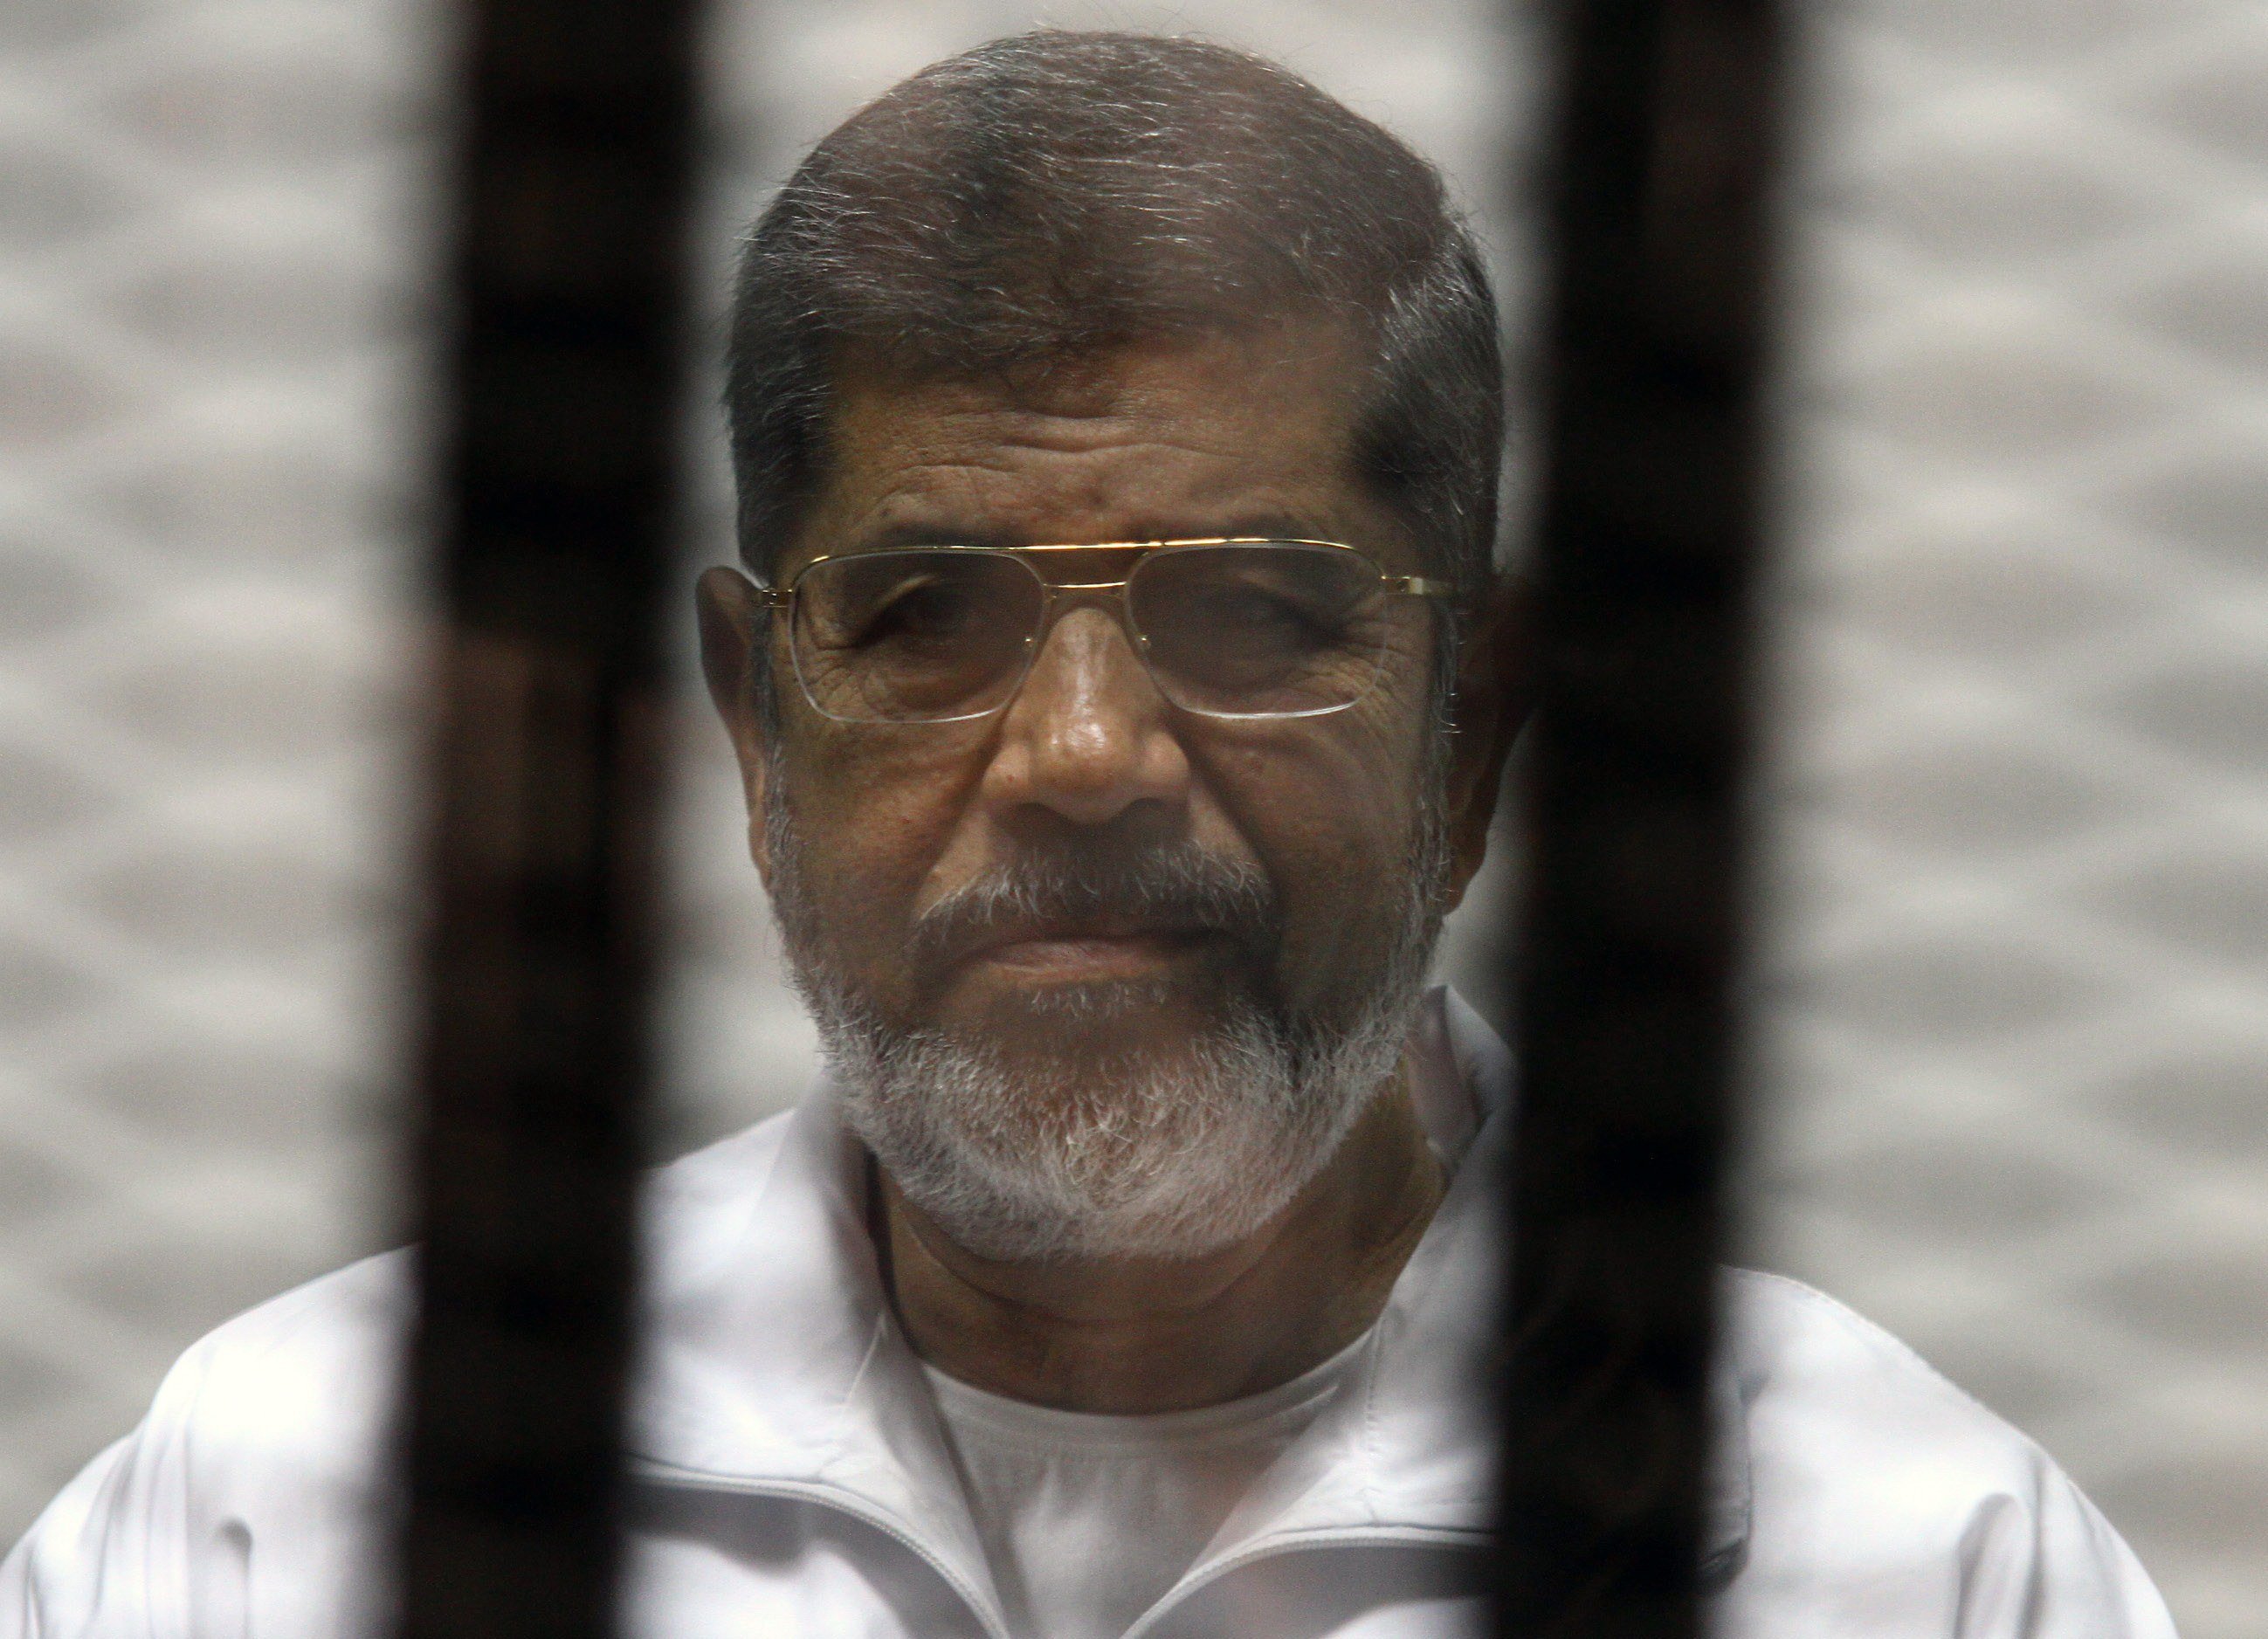 أسرة الرئيس المصري الراحل محمد مرسي ترد على أنباء عن محاولة انتحار نجله أسامة في السجن